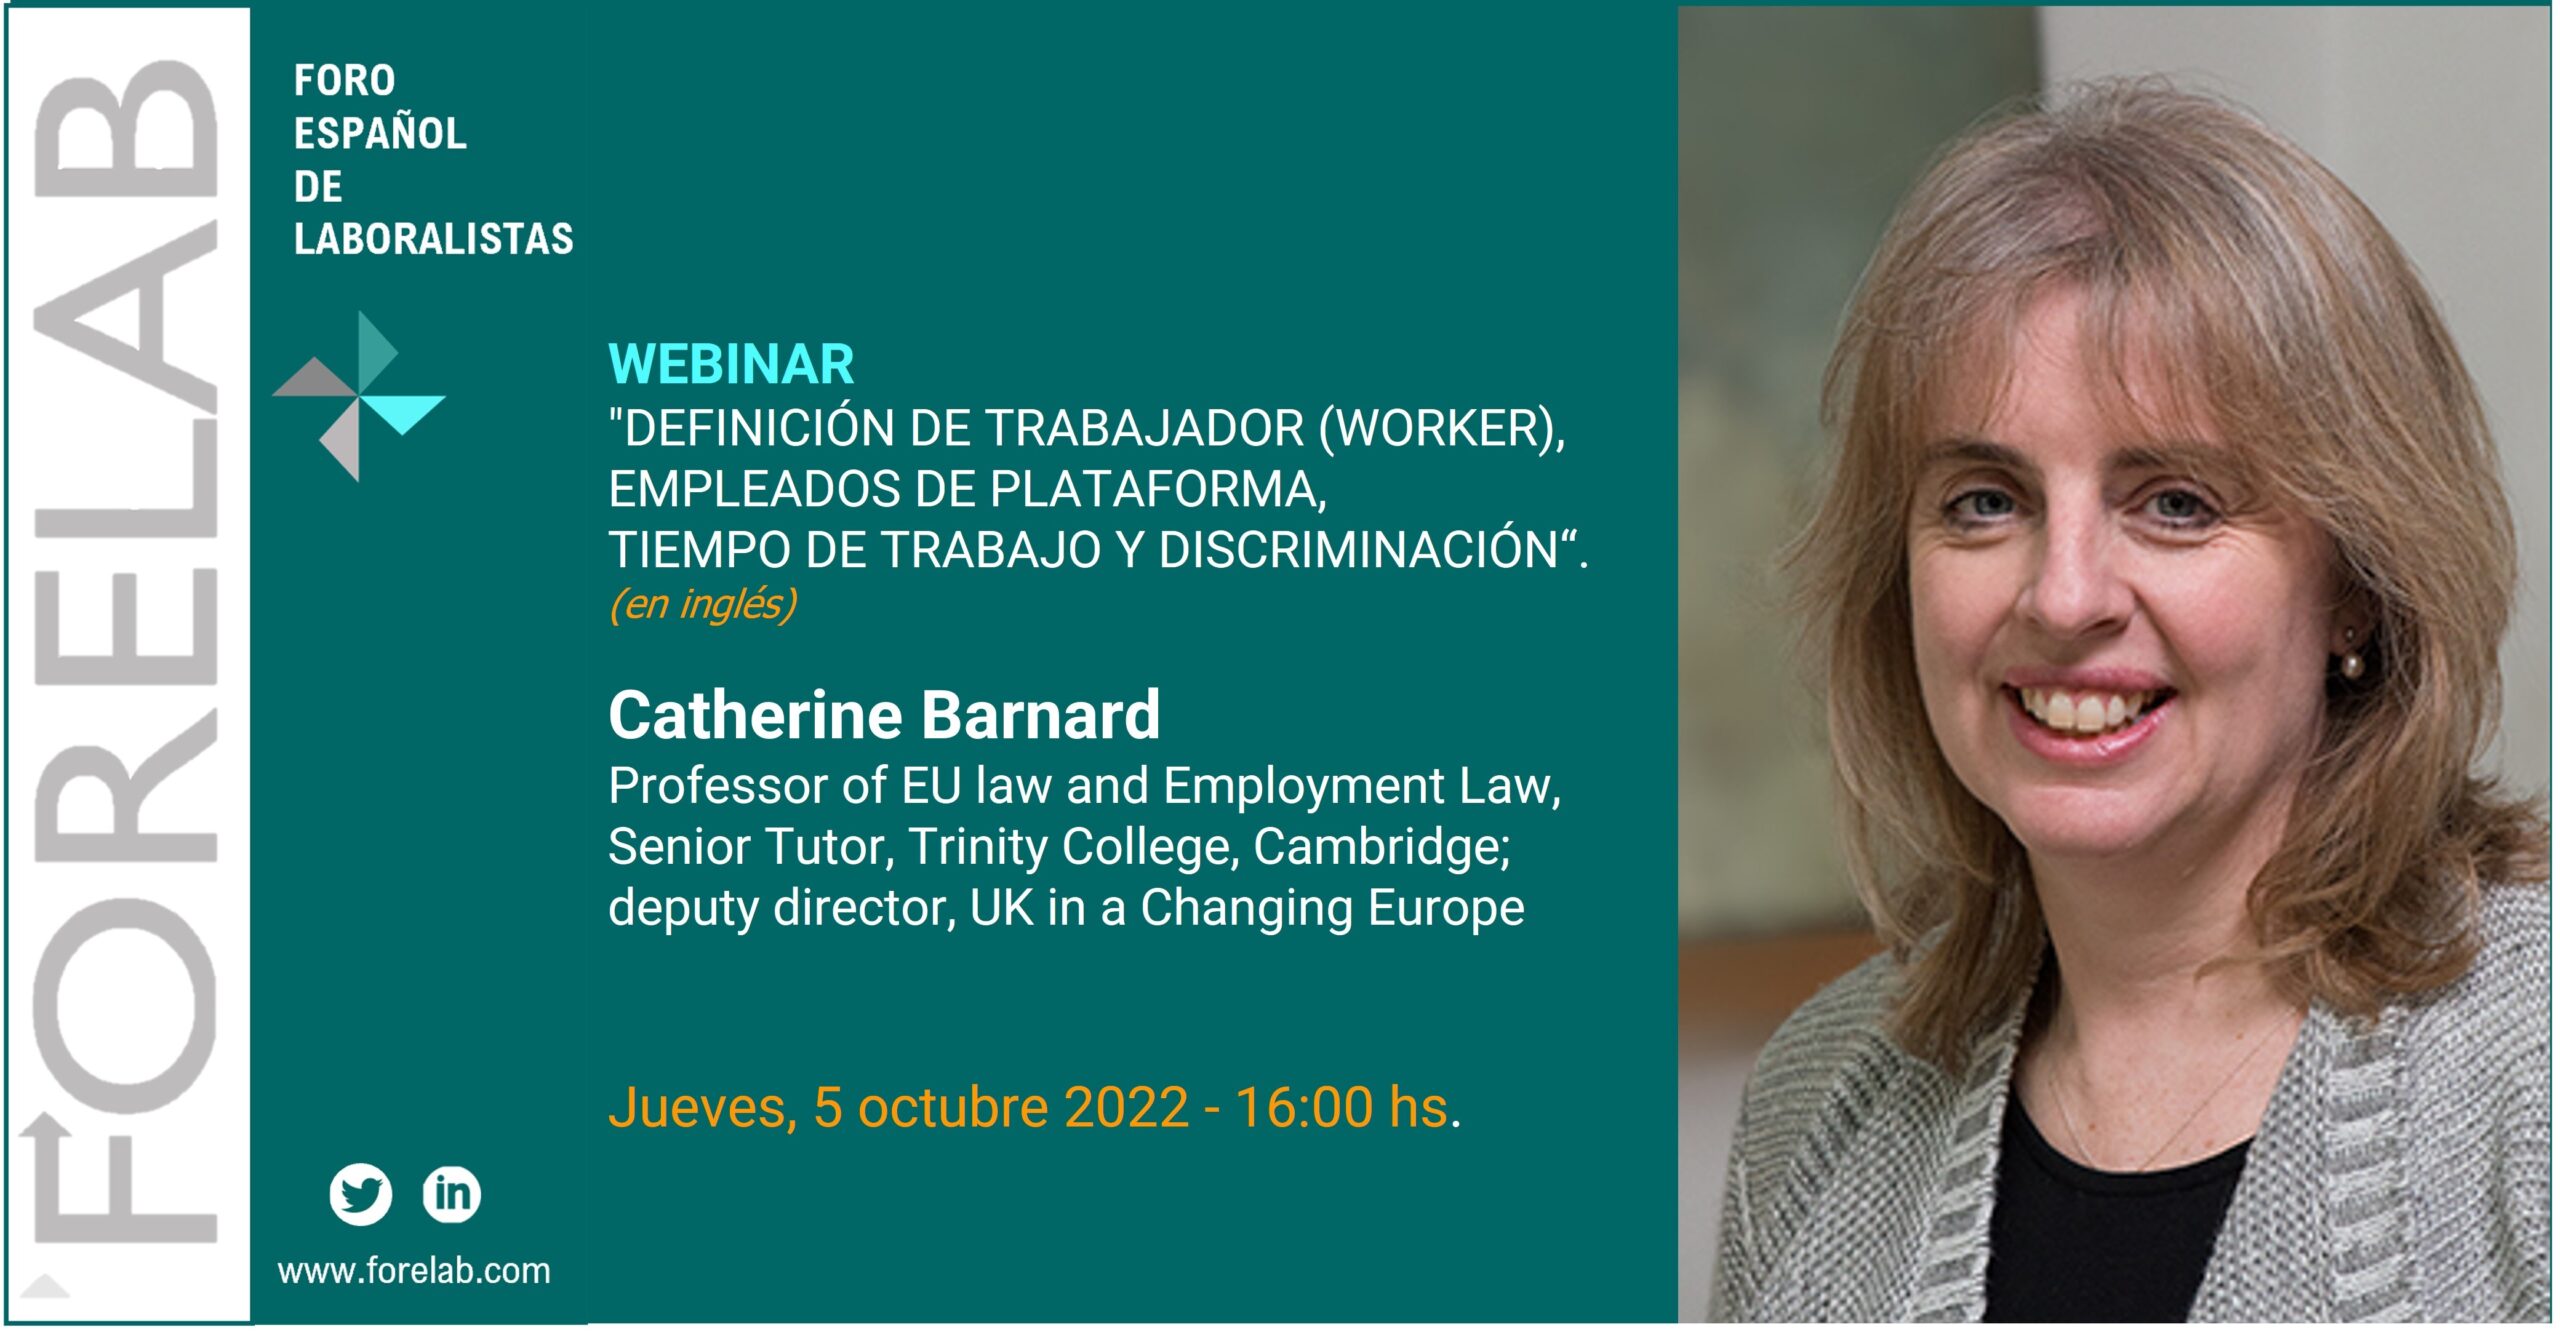 Webinar Forelab: Catherine Barnard. Definición de trabajador (worker), empleados de plataforma, tiempo de trabajo y discriminación.